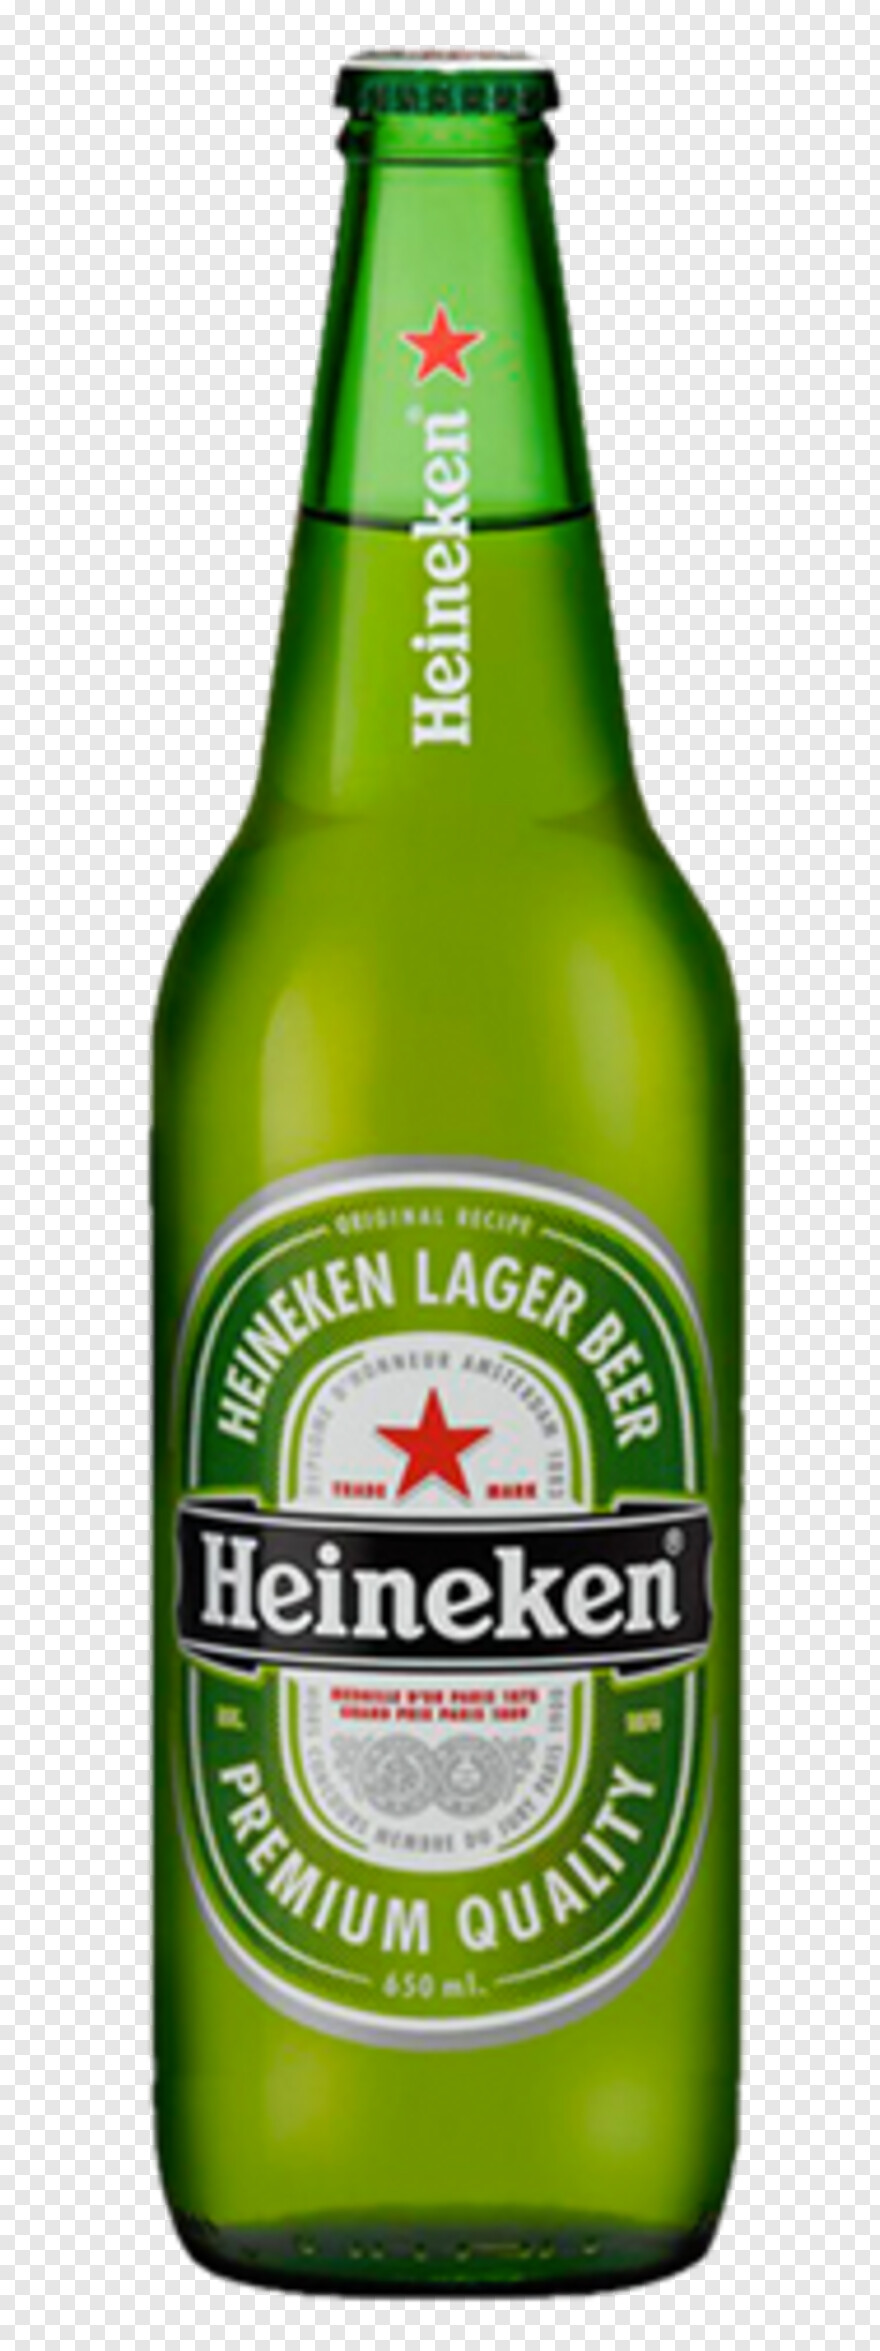 heineken-bottle # 381450